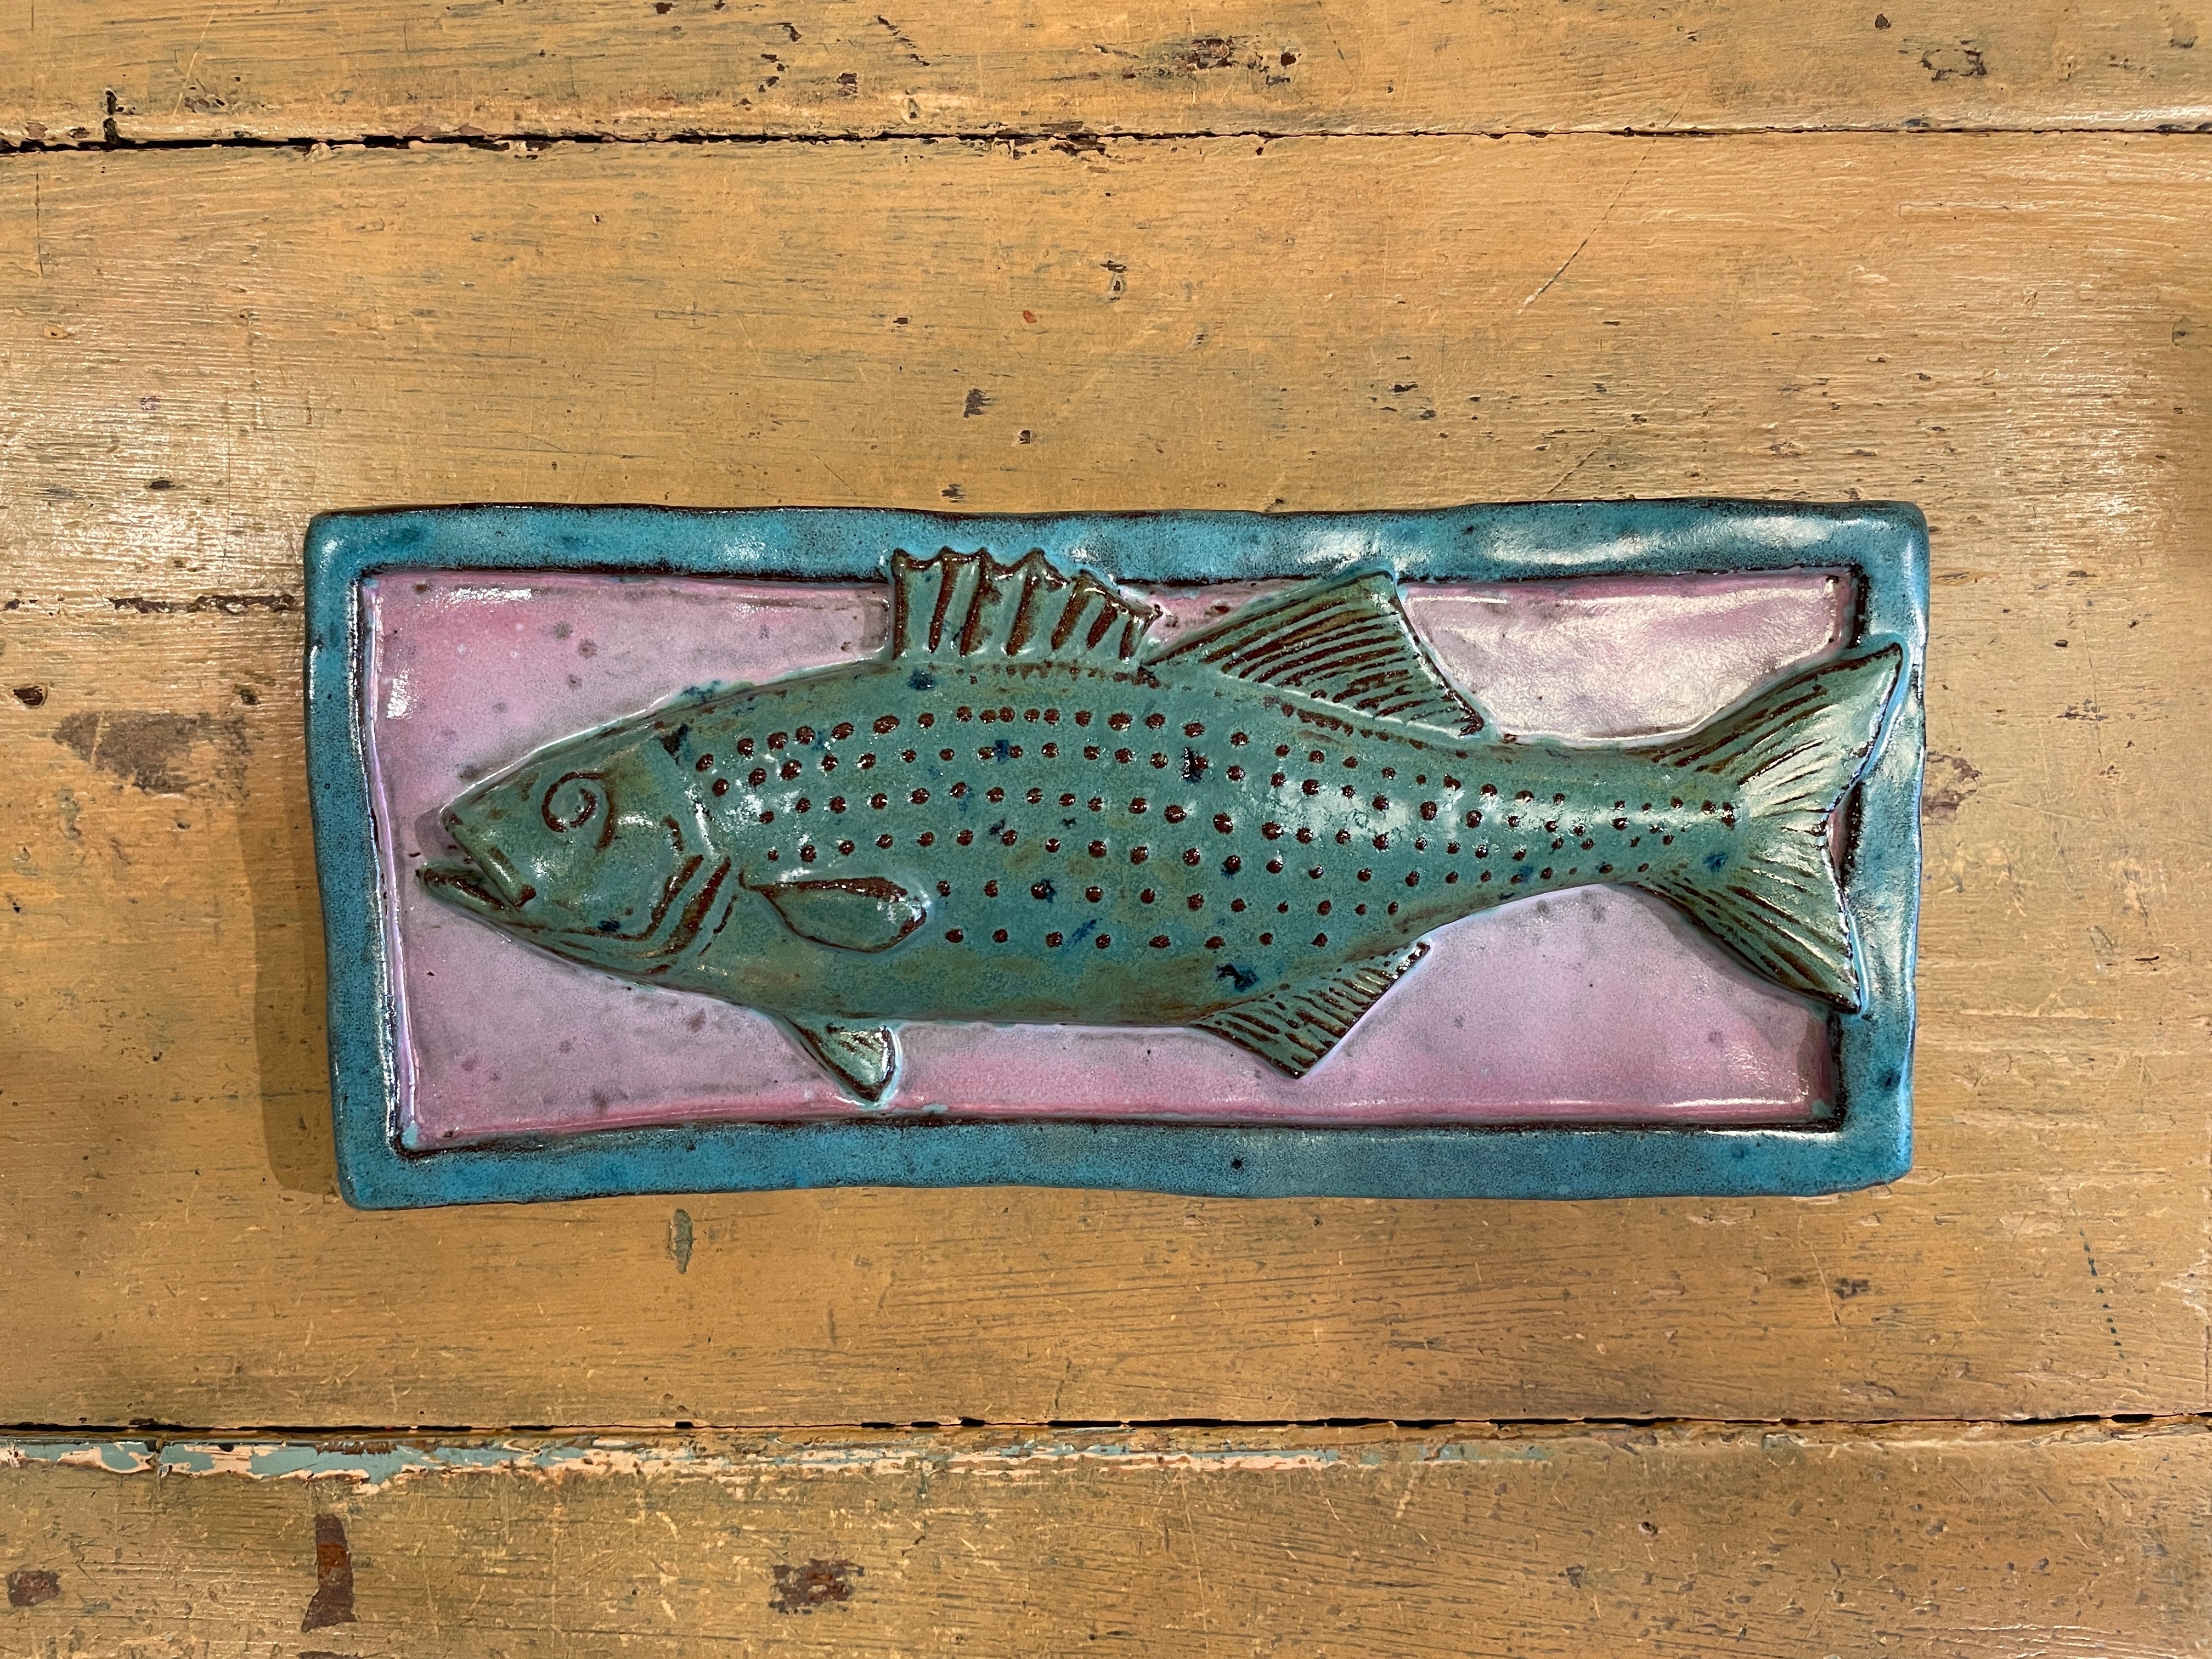 Fish Decorative Ceramic Tile 4” x 9”